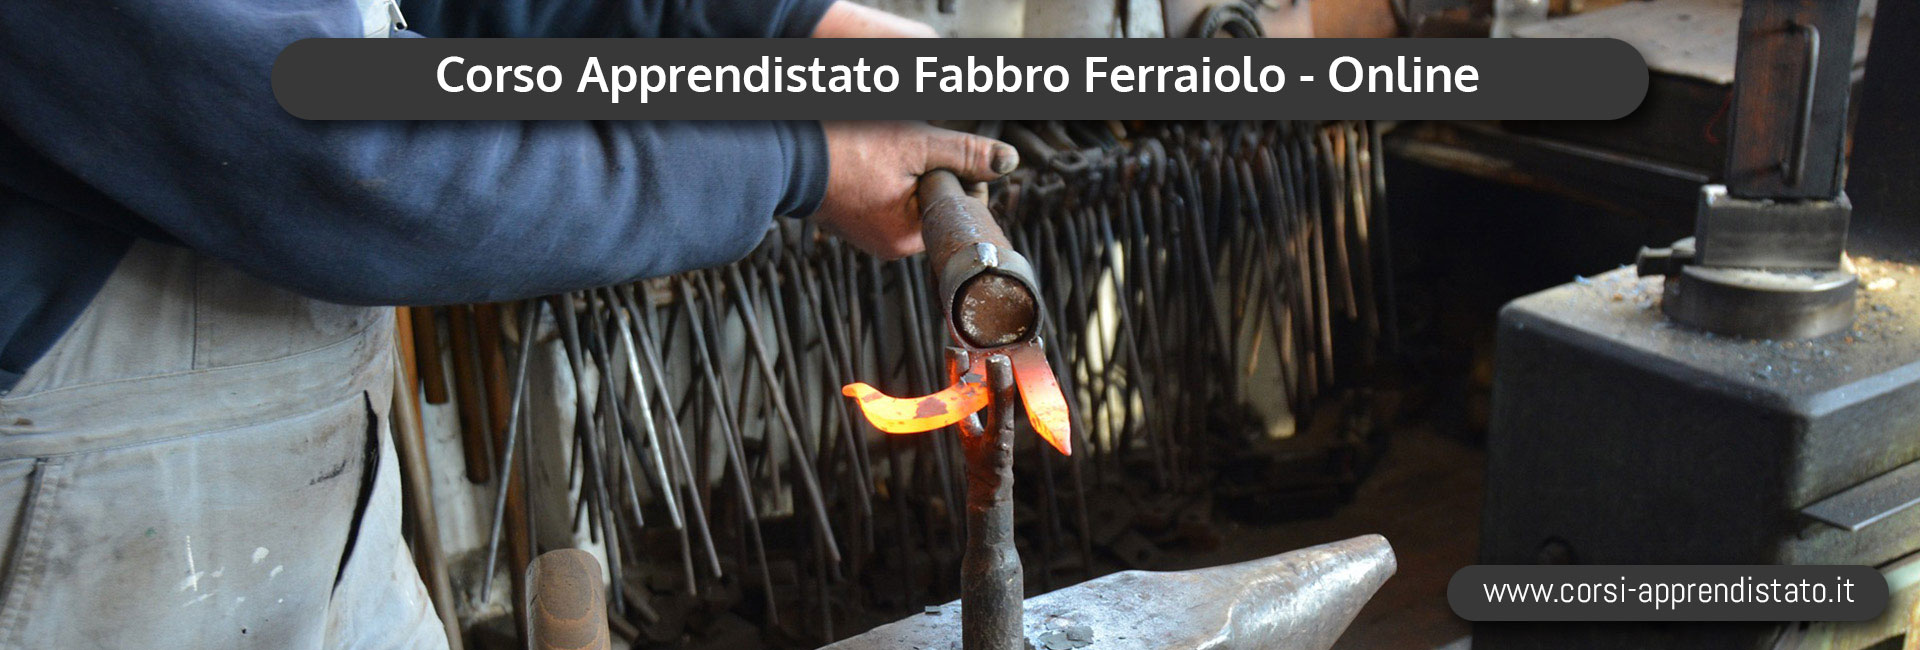 Apprendistato Fabbro Ferraiolo